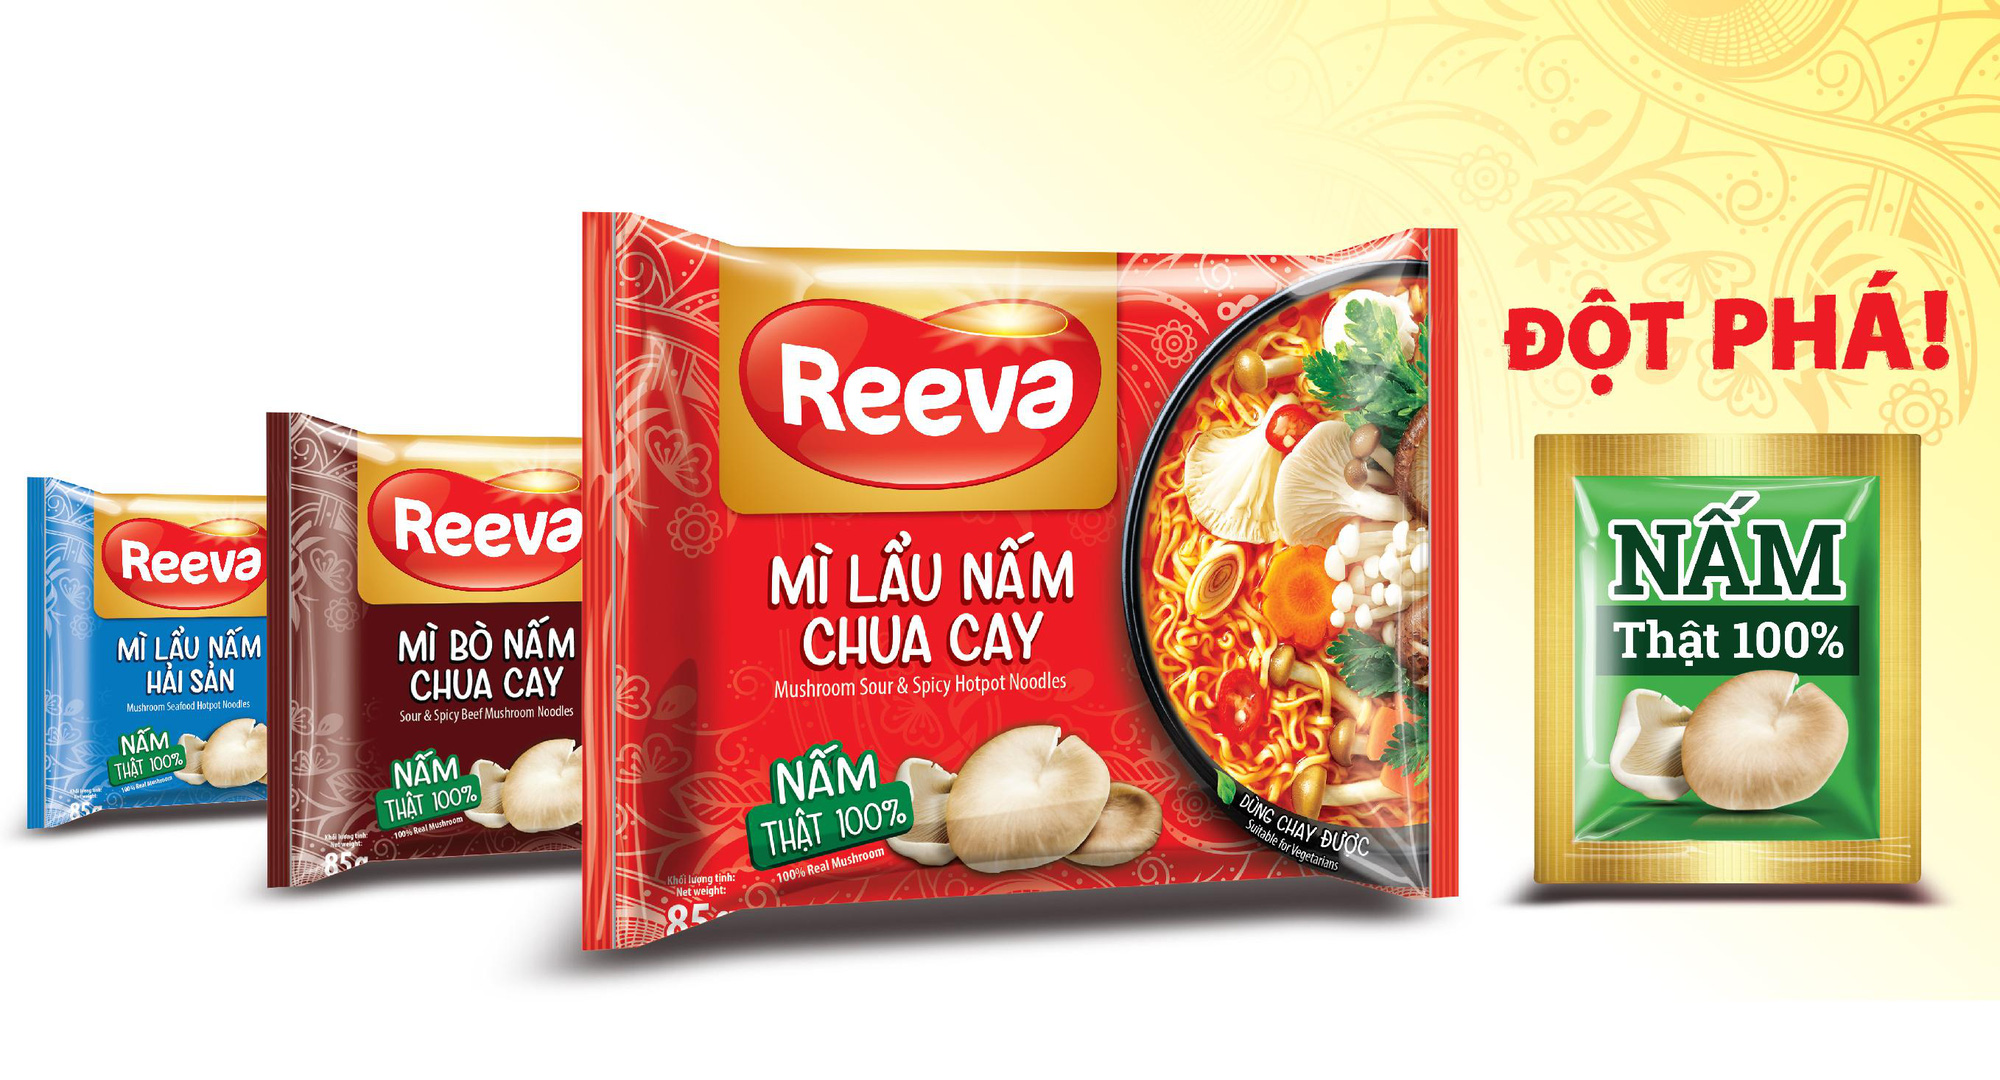 Mì Reeva – Món ngon bổ dưỡng, tăng cường đề kháng với nấm tươi cho cả nhà - Ảnh 2.